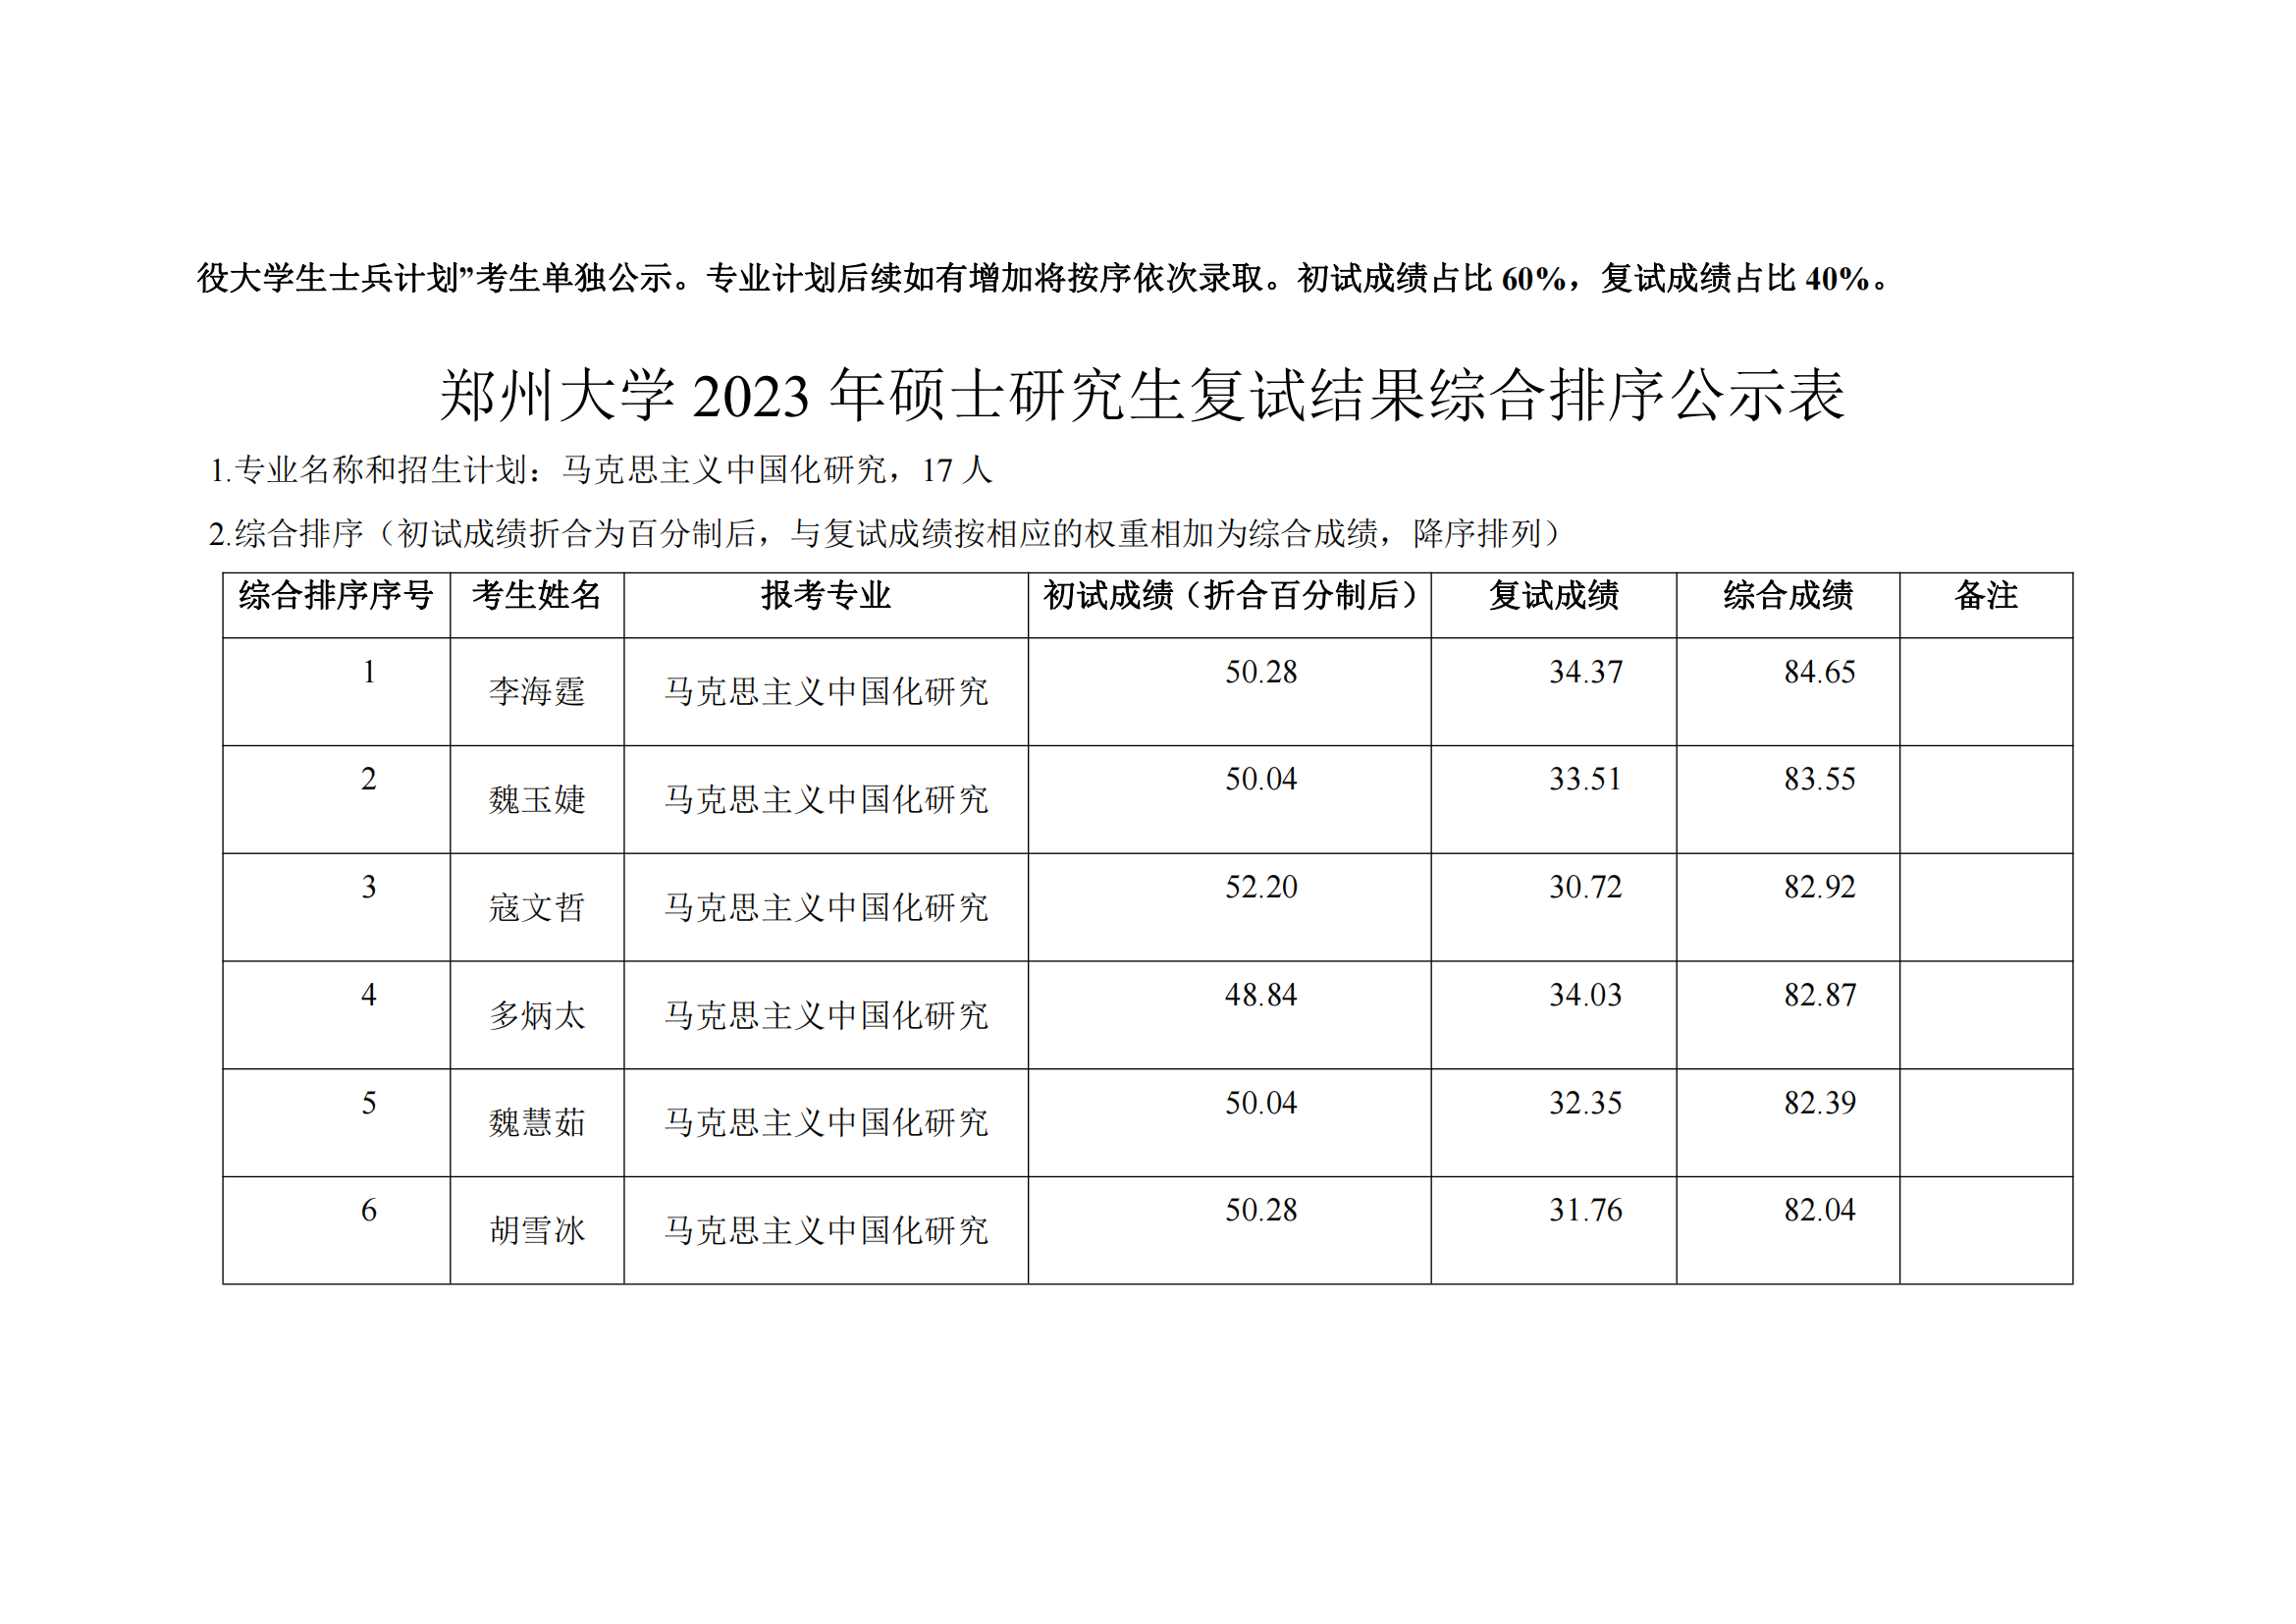 郑州大学马克思主义学院2023年硕士研究生复试结果综合排序公示表_09.png